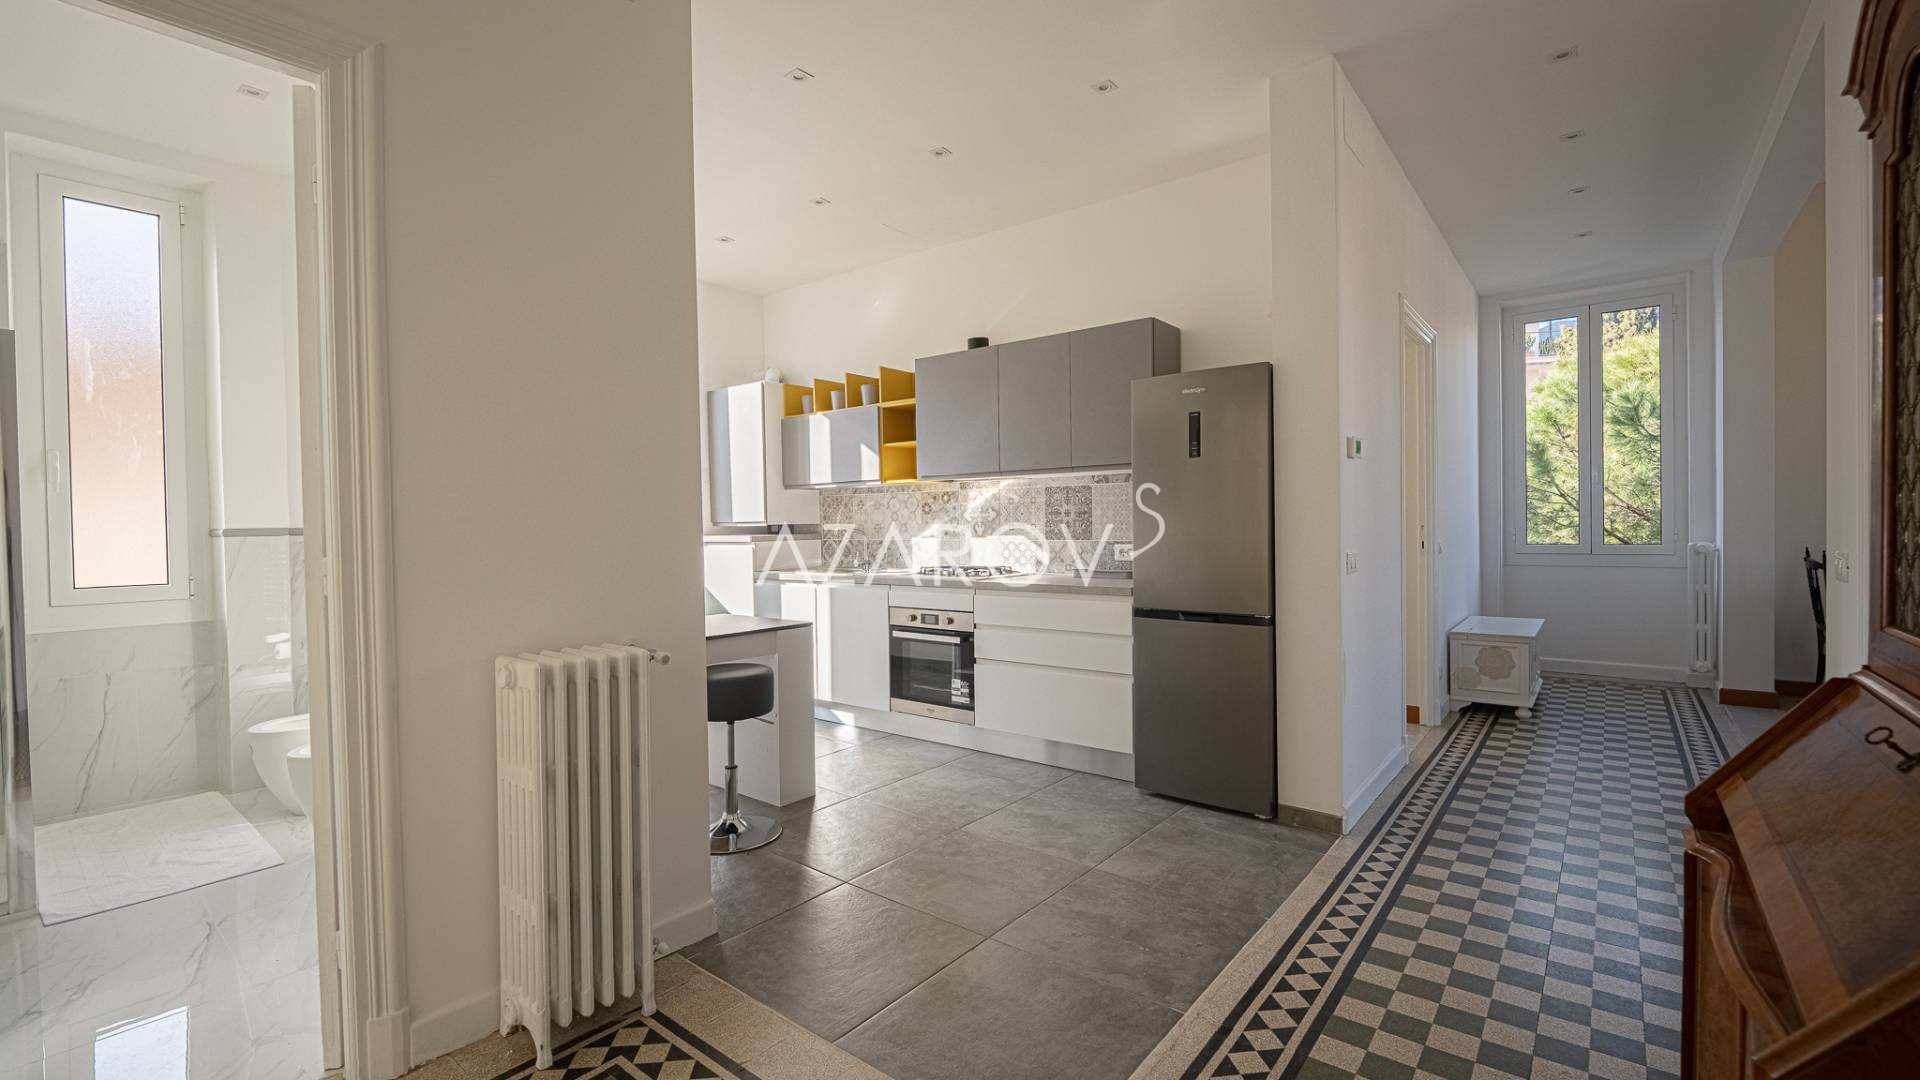 Four-room apartment in Sanremo 120 sq m